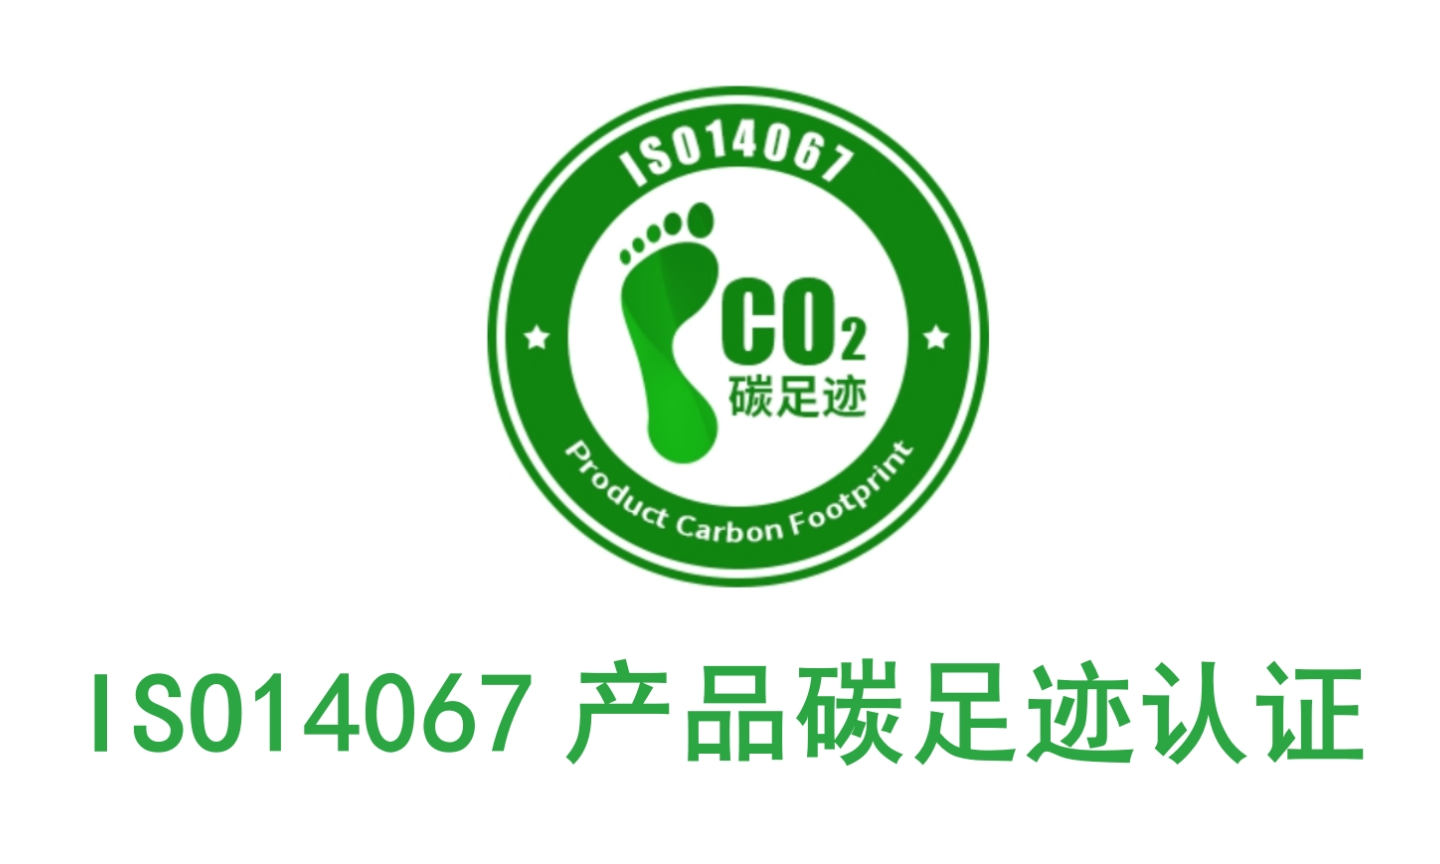 惠州代办碳足迹认证流程及费用